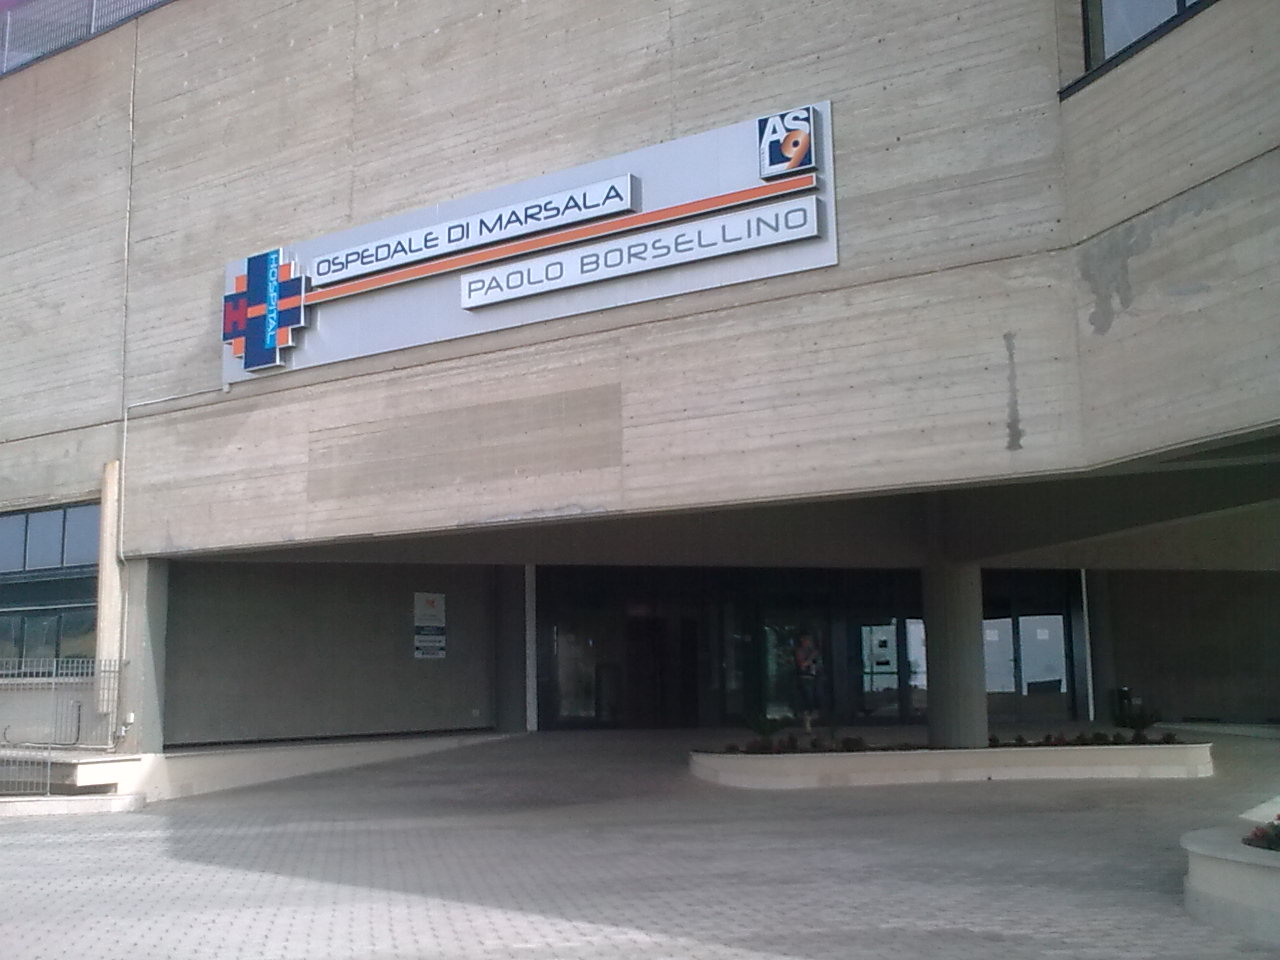 Ospedale "Paolo Borsellino" di Marsala